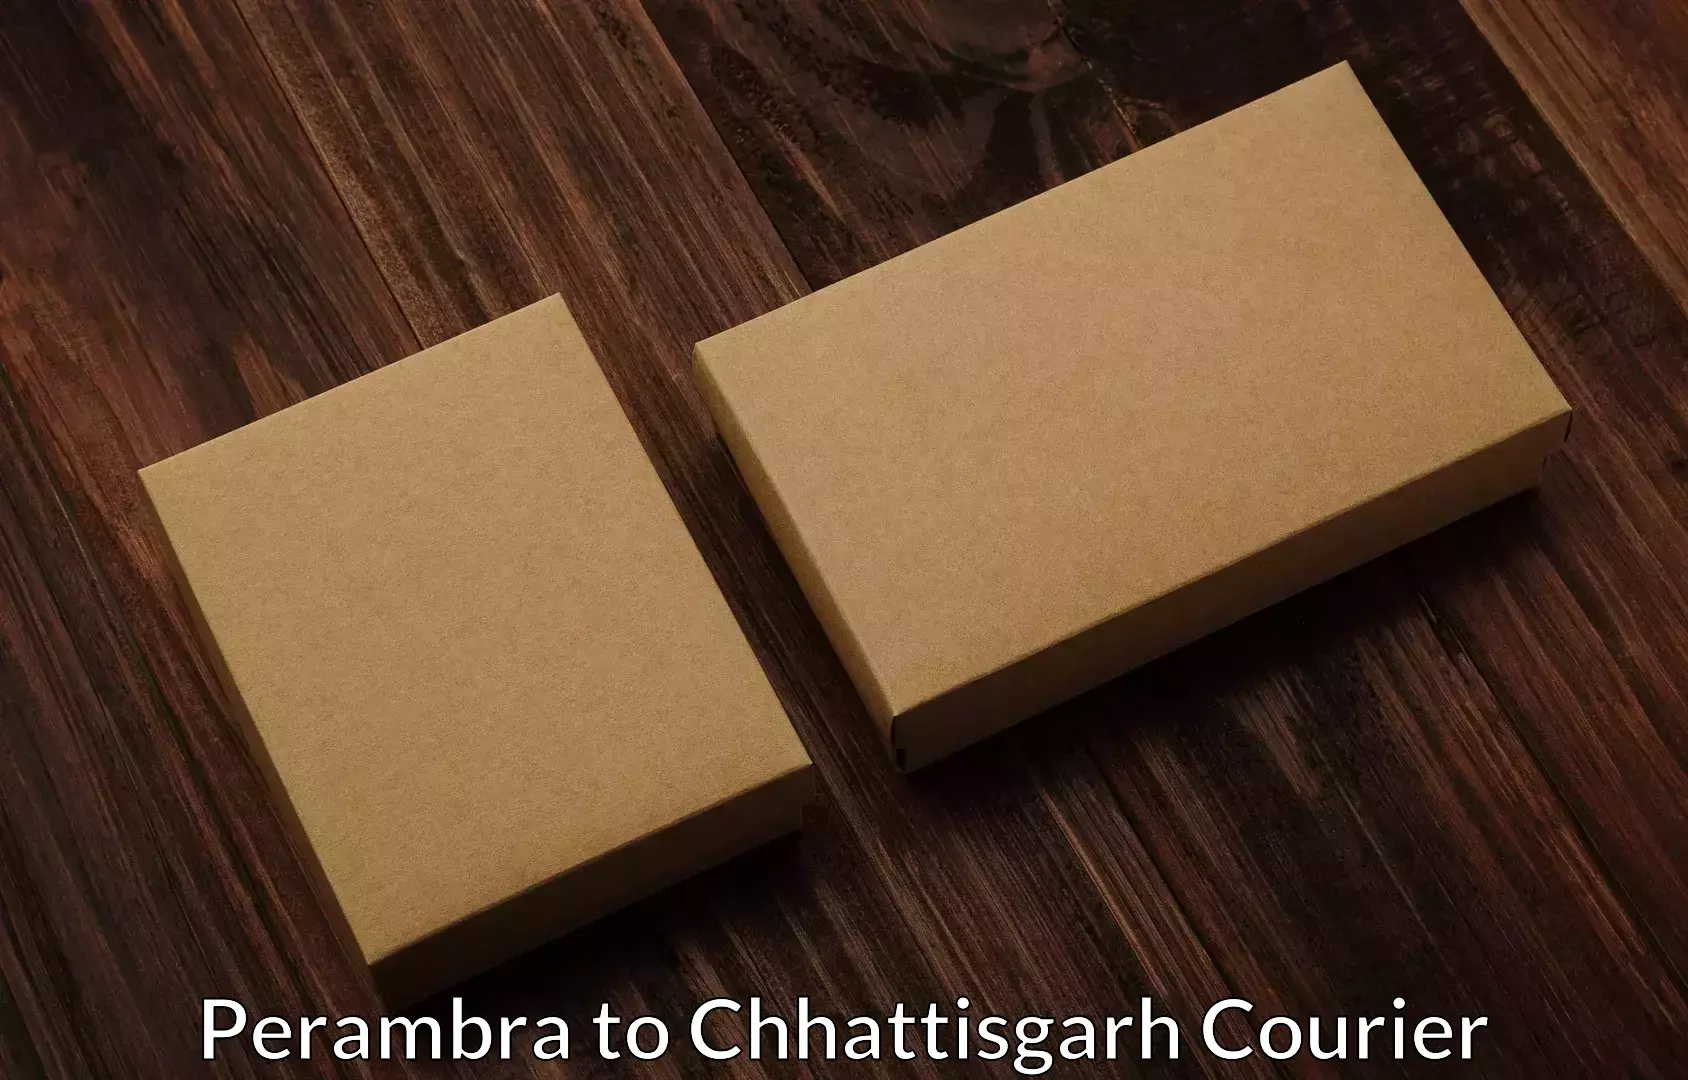 Home furniture shifting Perambra to Korea Chhattisgarh